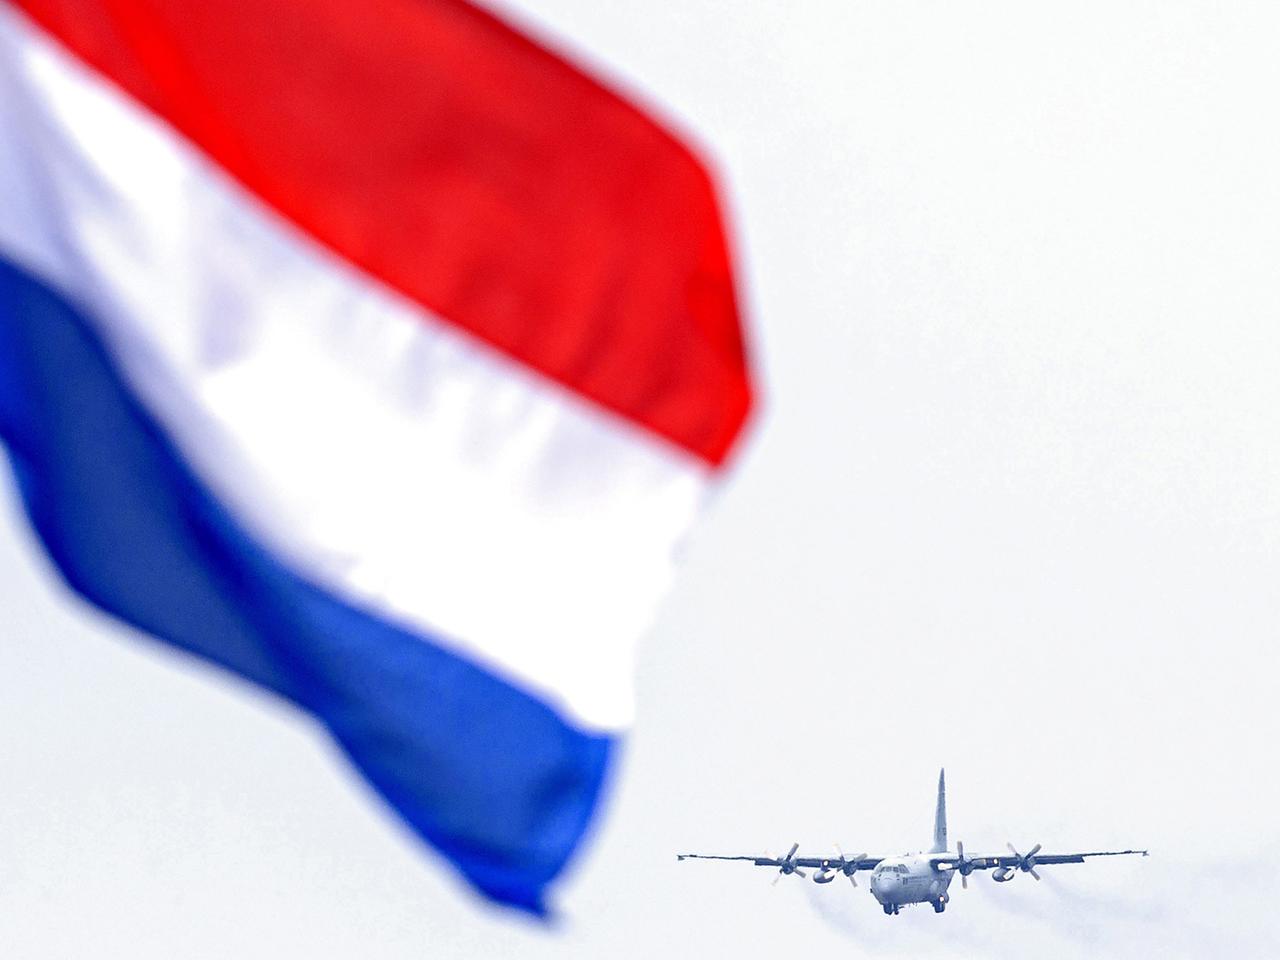 Transportmaschine des Militärs im Landeanflug, im Vordergrund weht die niederländische Flagge.